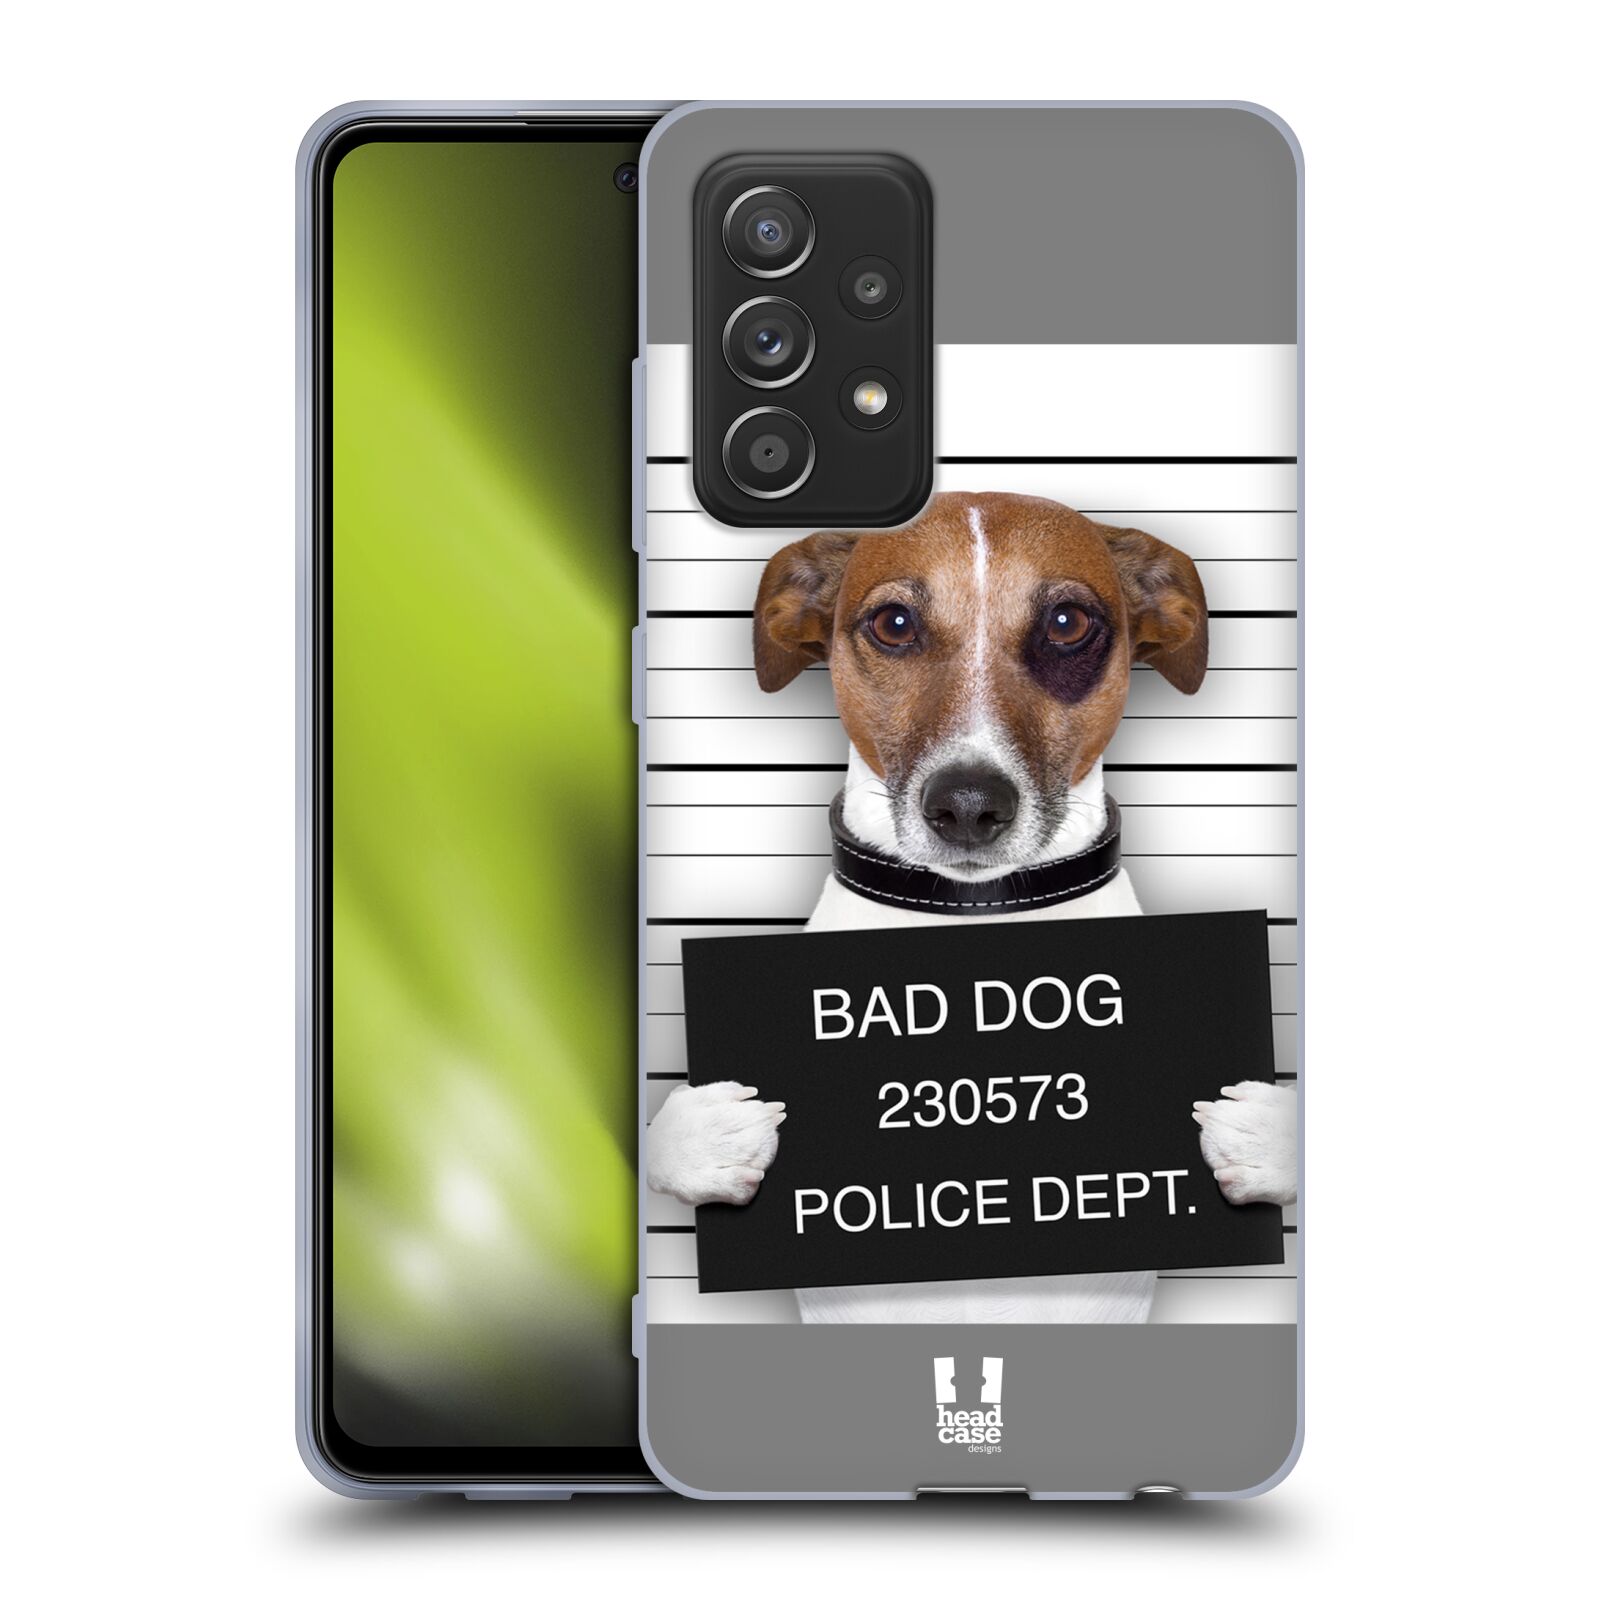 Plastový obal HEAD CASE na mobil Samsung Galaxy A52 / A52 5G / A52s 5G vzor Legrační zvířátka pejsek na policii